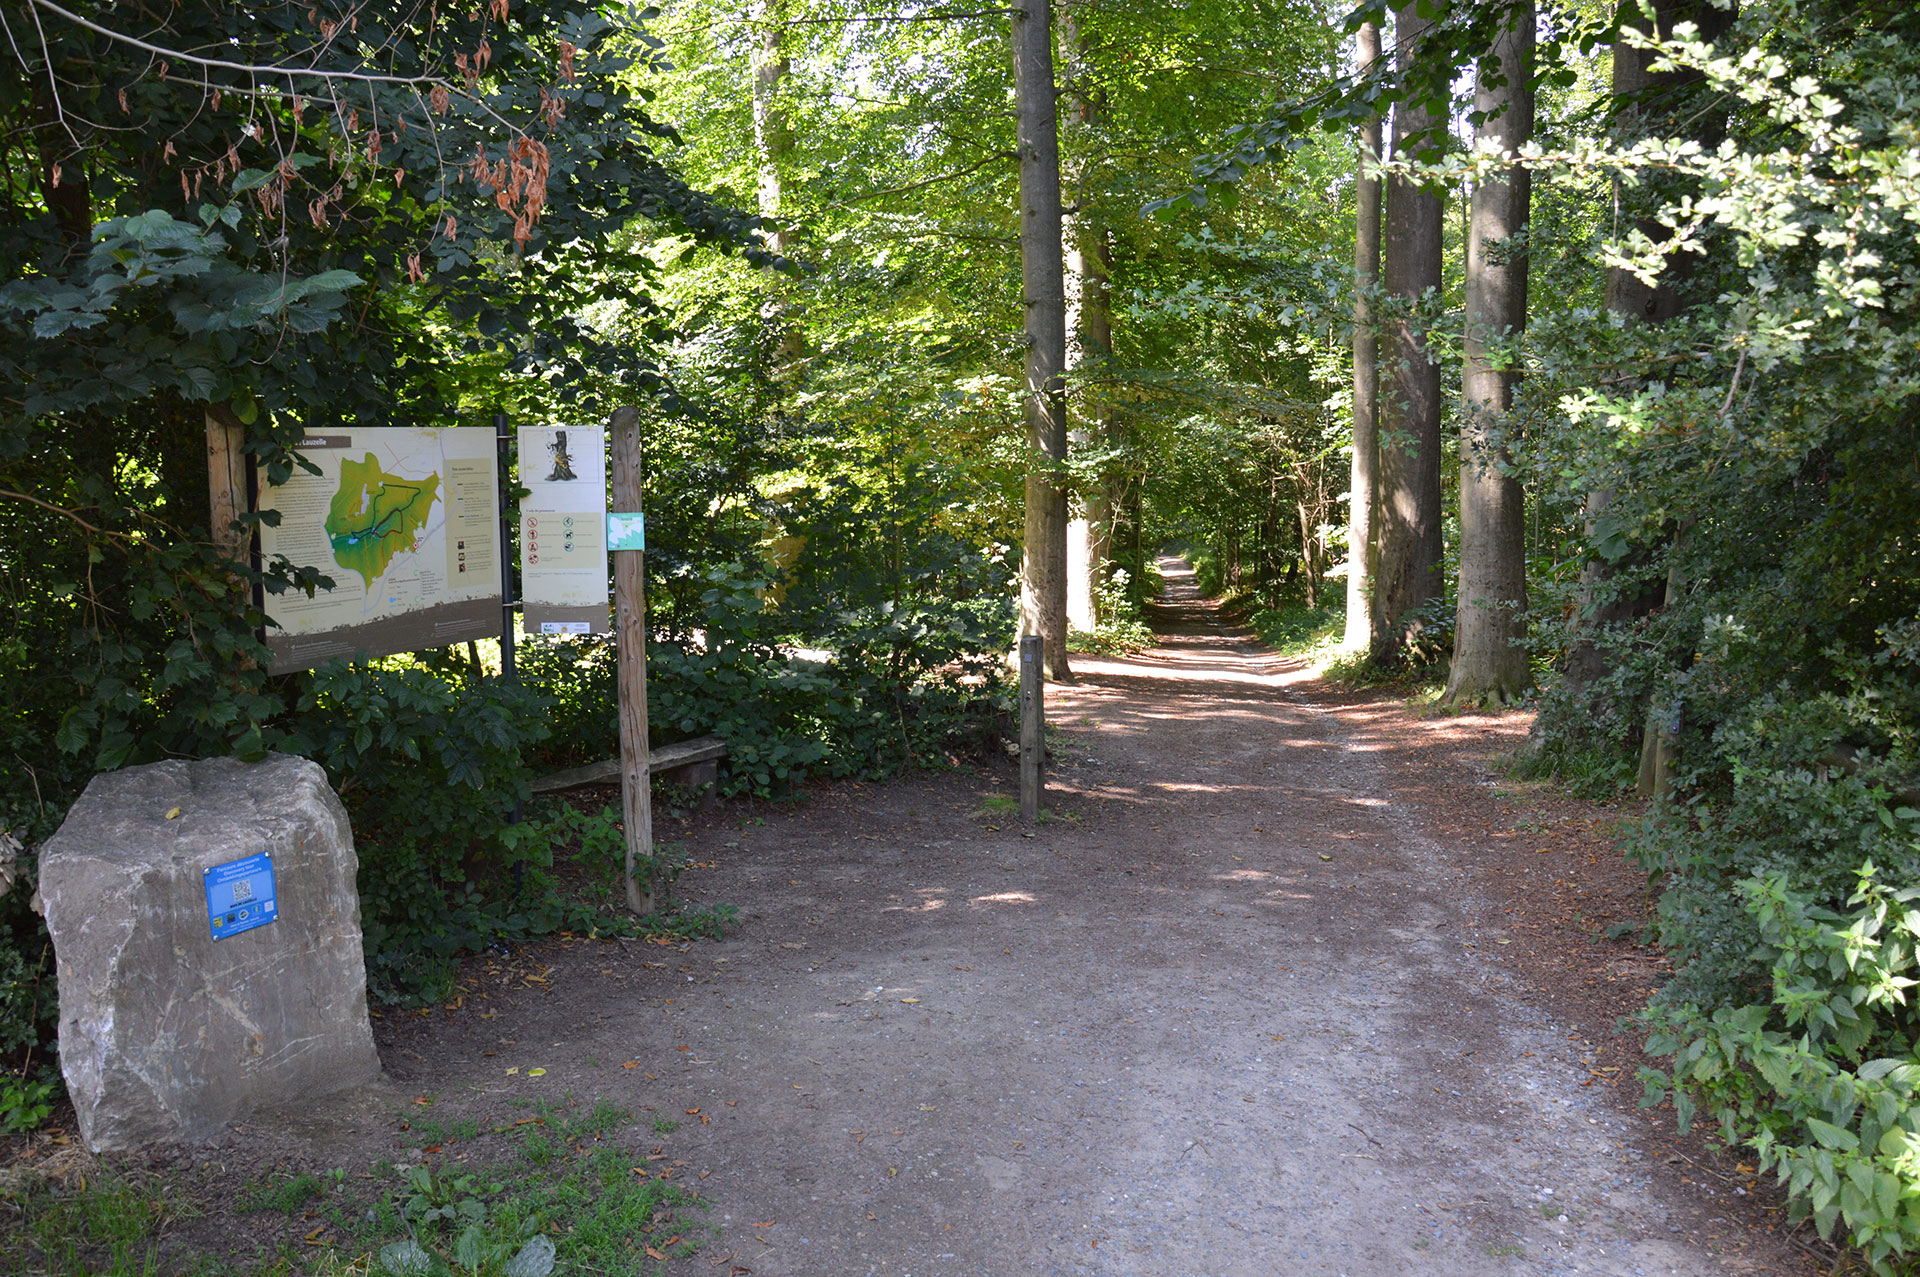 Bois de Lauzelle - Louvain-la-Neuve - Site classé Natura 2000 - 20 ha - patrimoine naturel - Ottignies-Louvain-la-Neuve - Brabant wallon